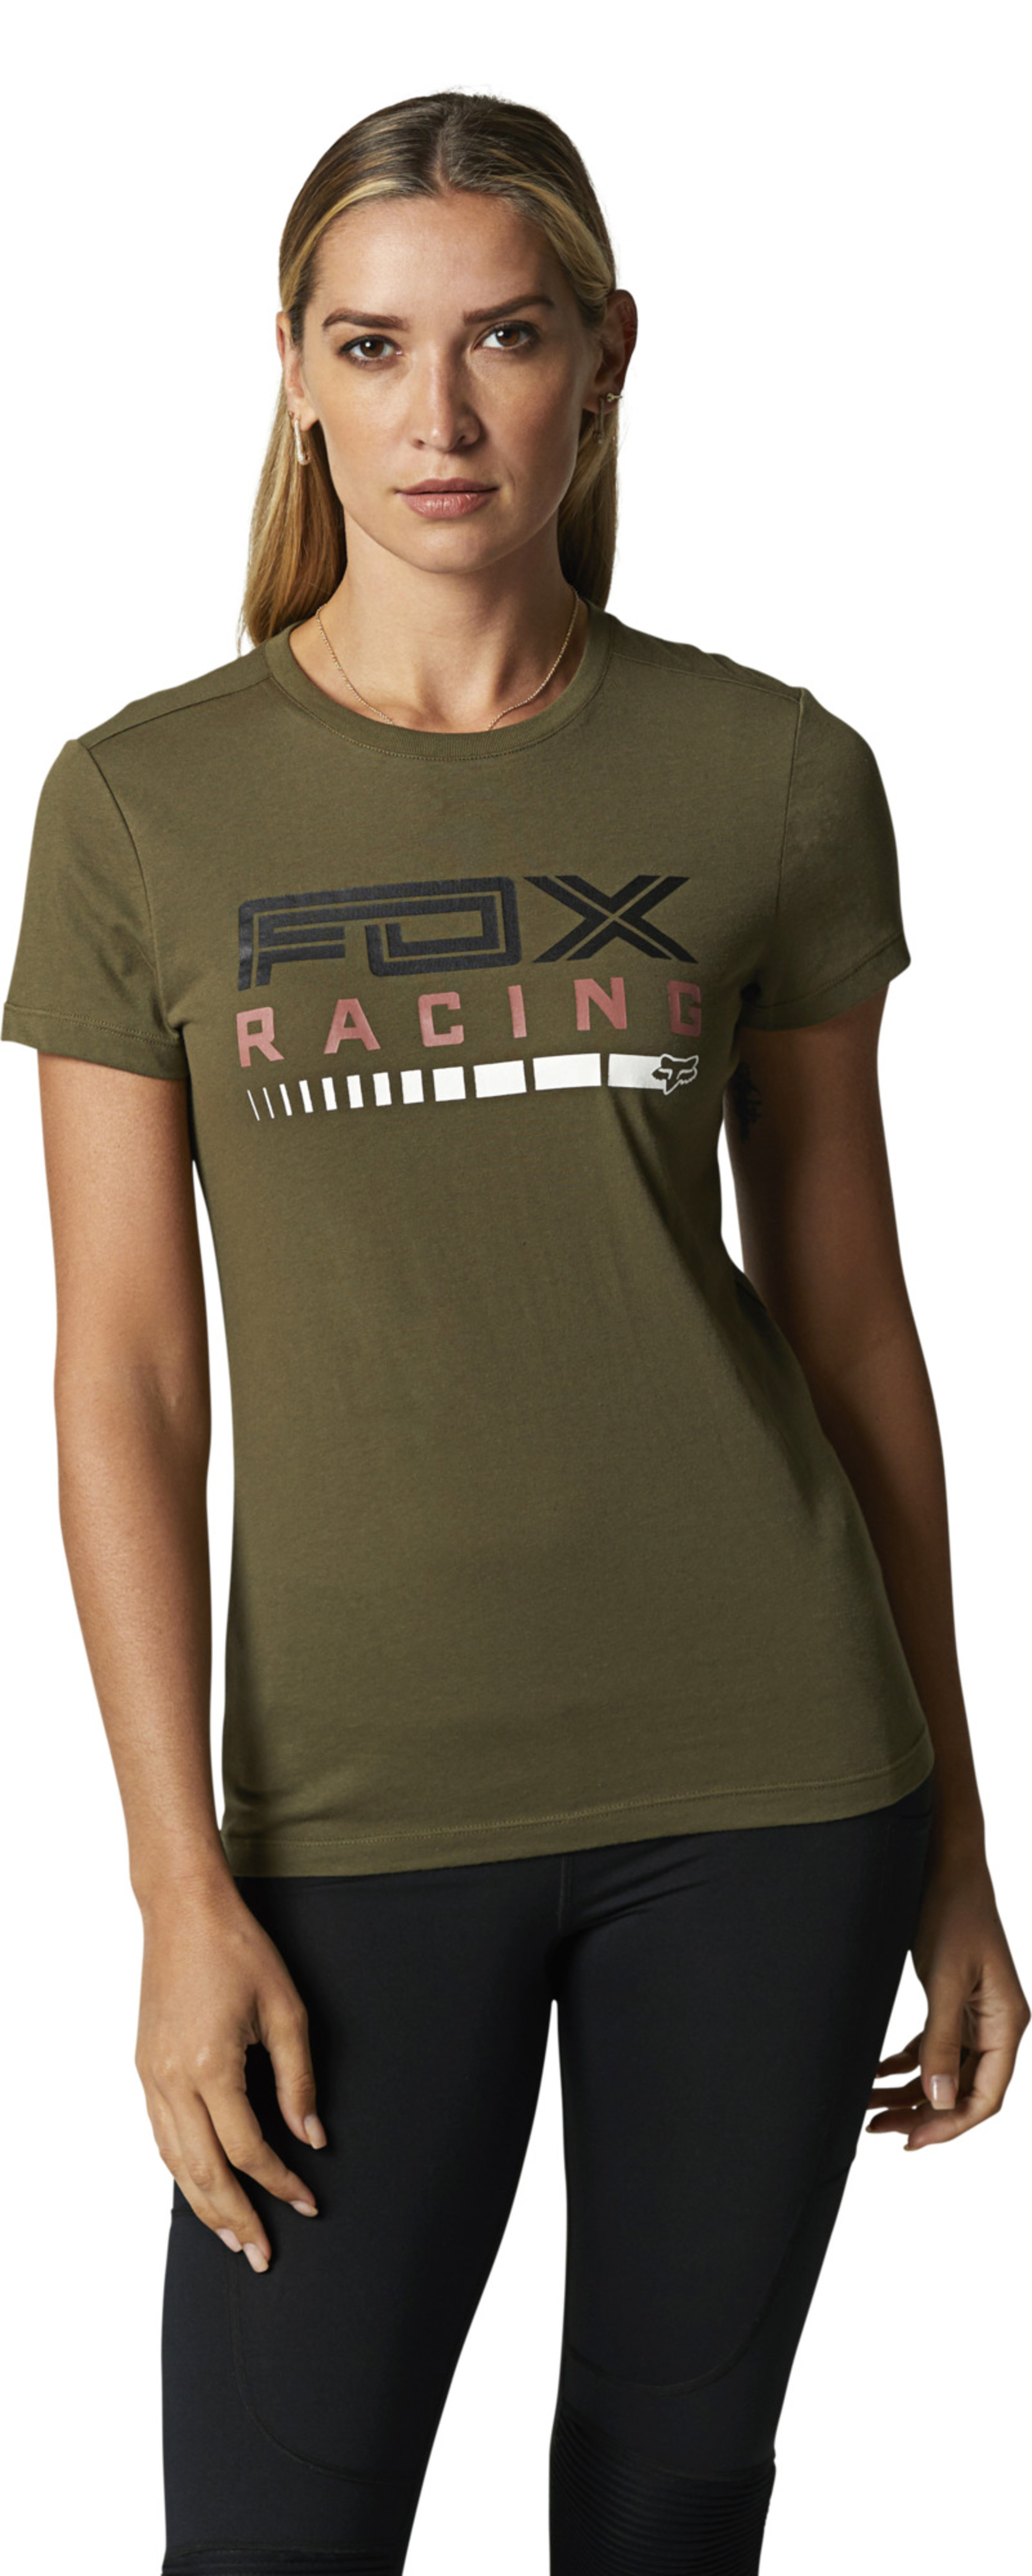 fox racing t-shirt shirts for womens show stopper